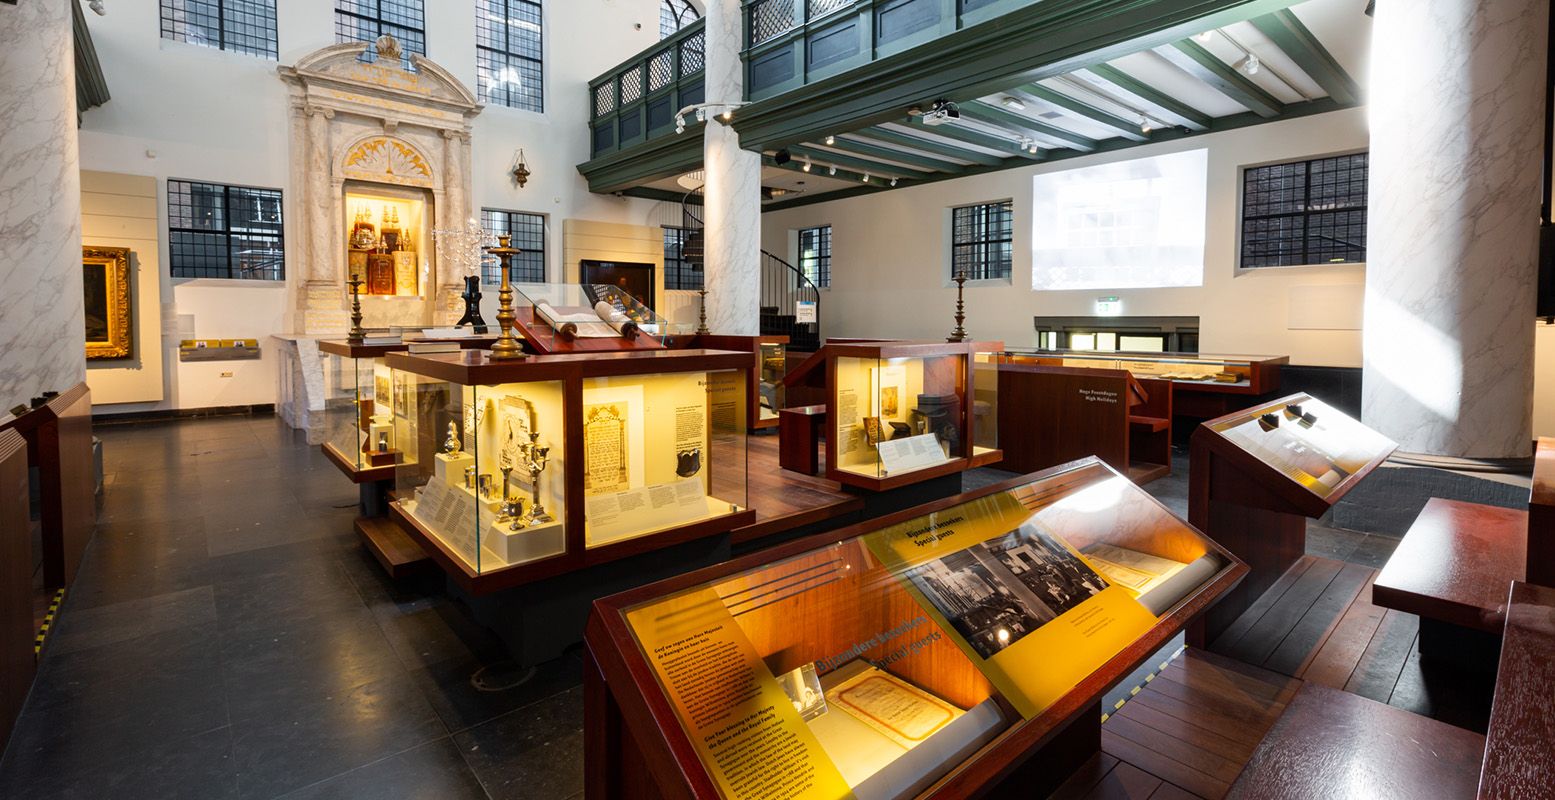 De vaste expositie over religie in het Joods Museum, onderdeel van het Joods Cultureel Kwartier. Foto: Joods Cultureel Kwartier